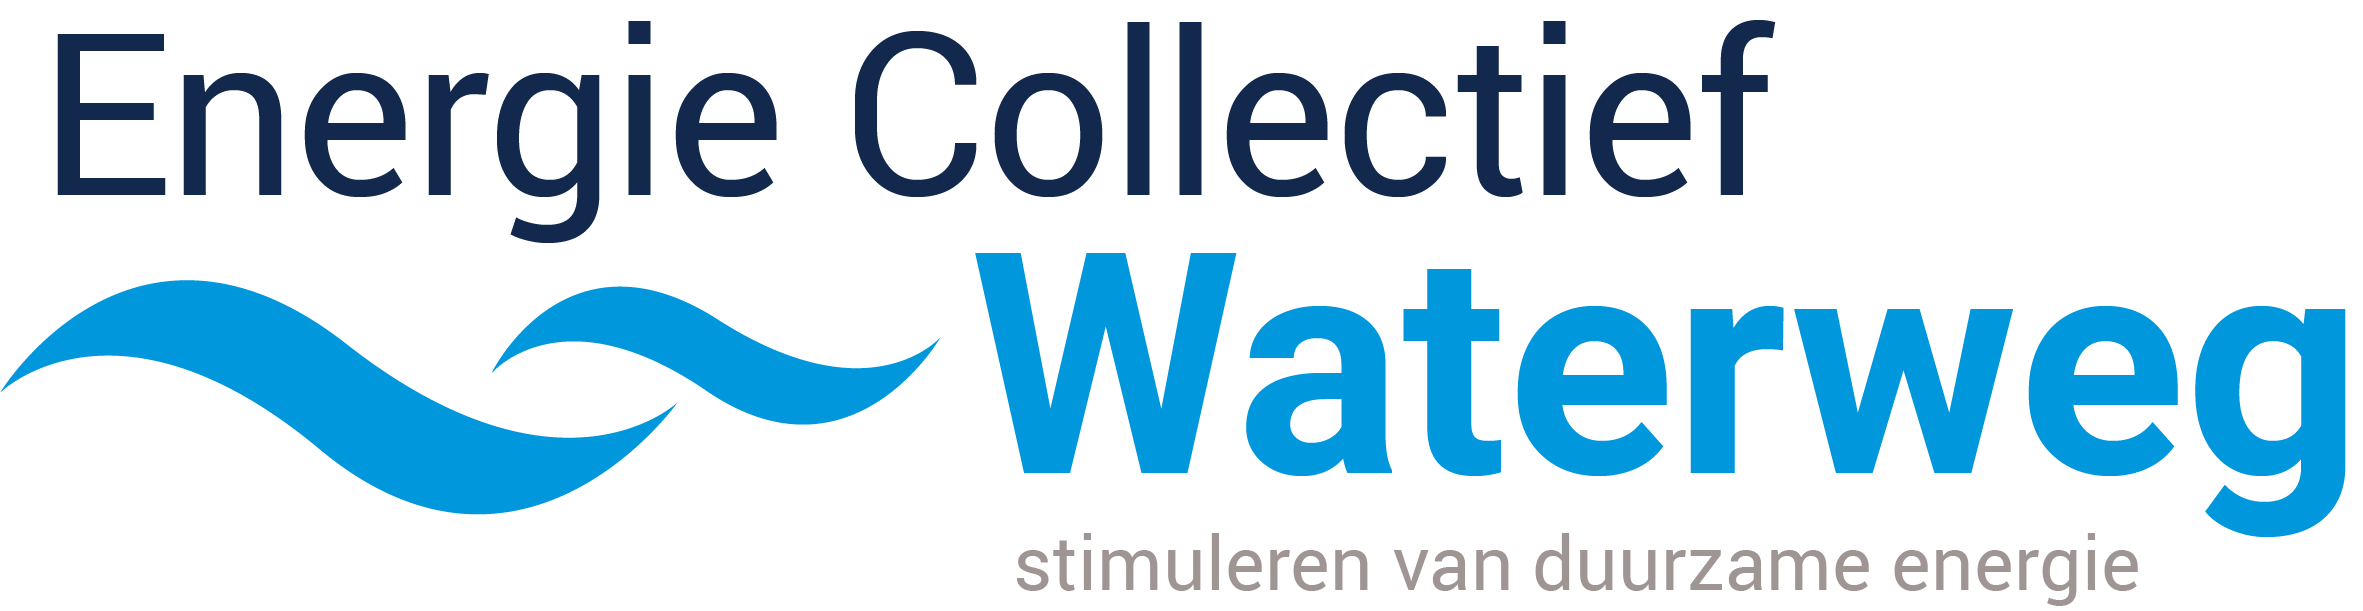 Logo Energie Collectief Waterweg